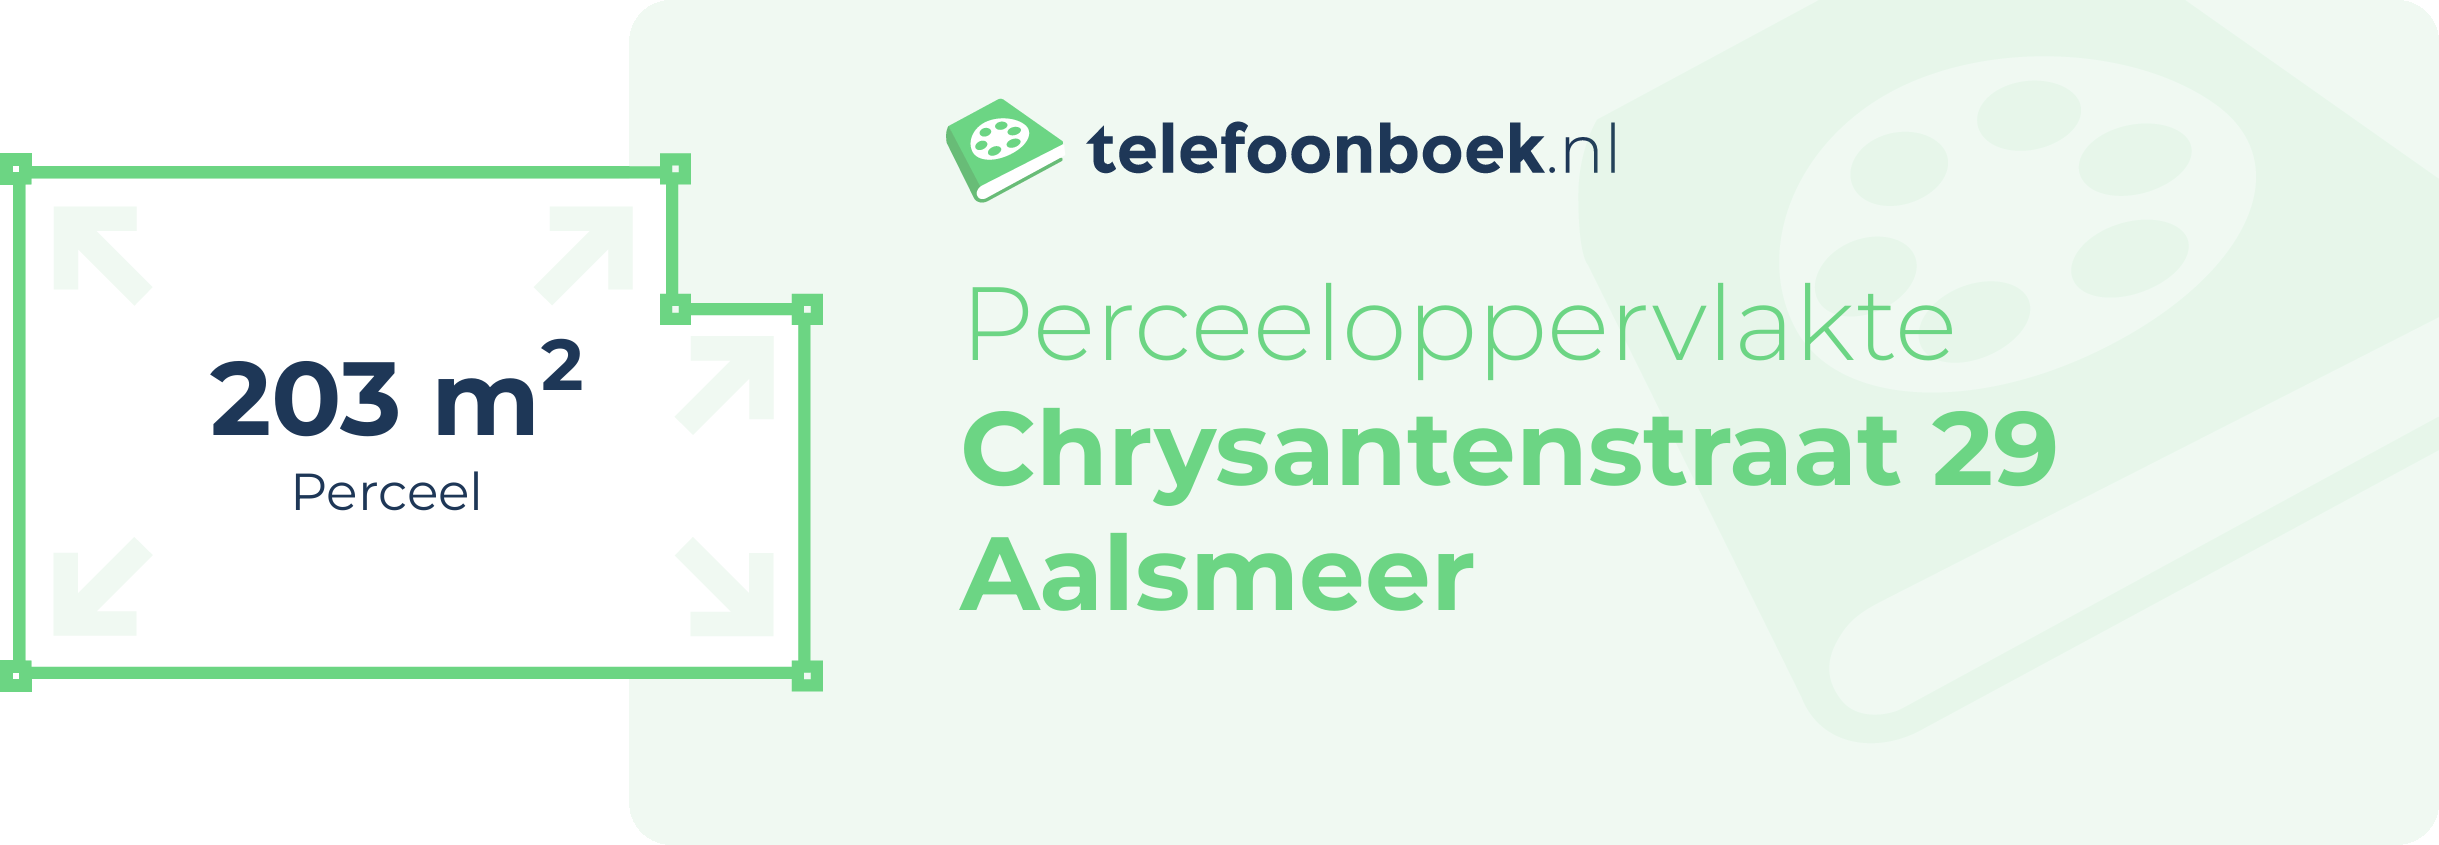 Perceeloppervlakte Chrysantenstraat 29 Aalsmeer